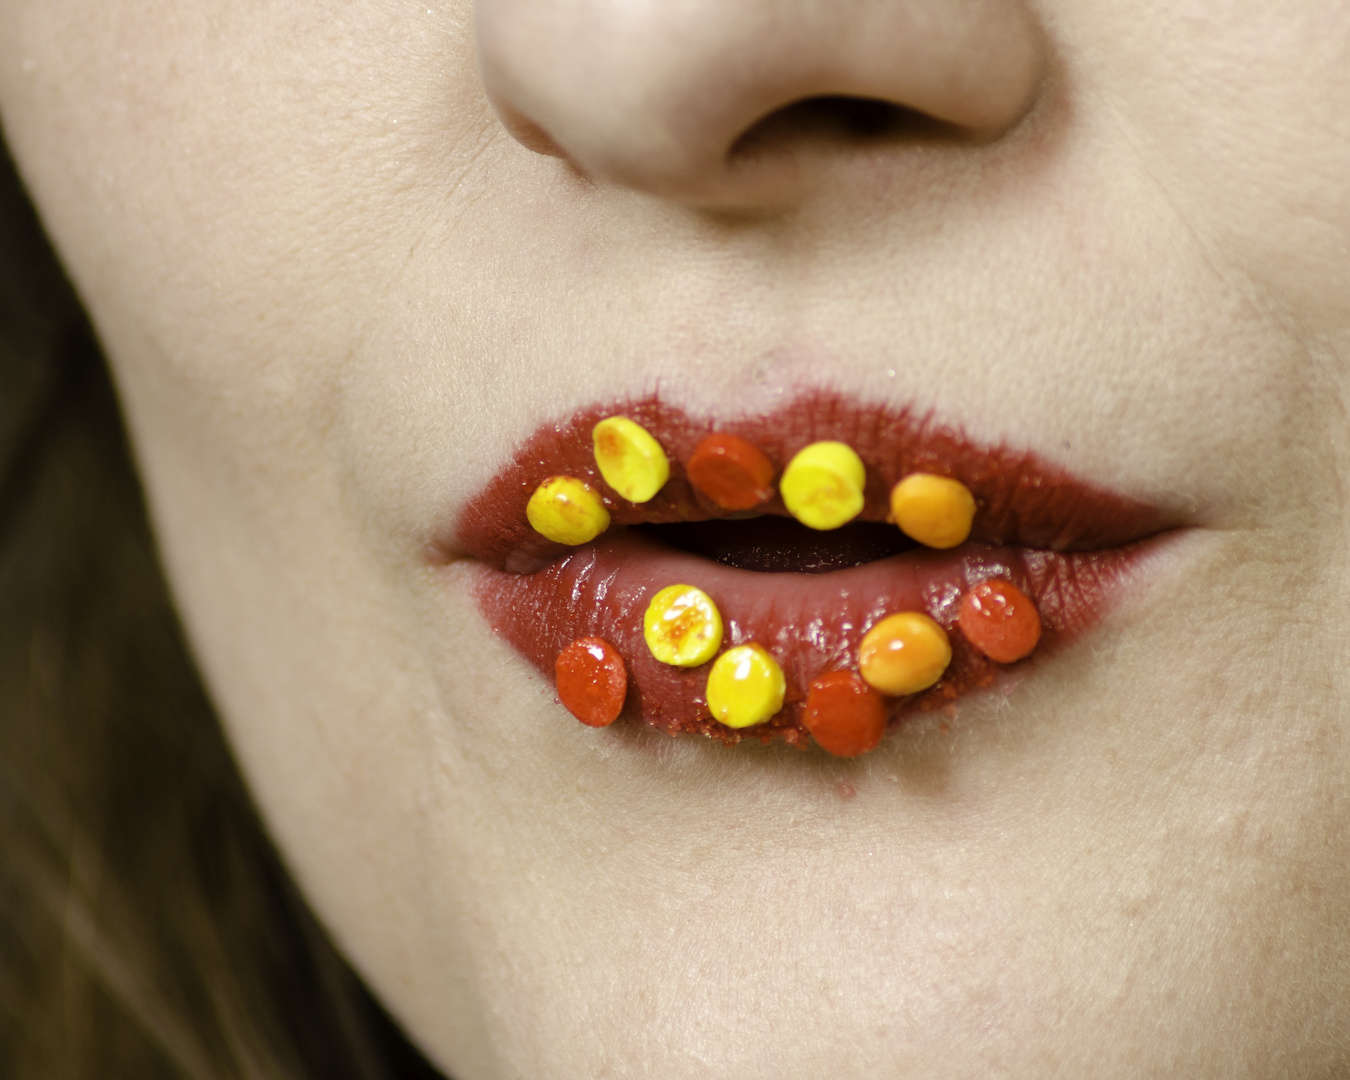 Candy Lips (jentrie jane-112)